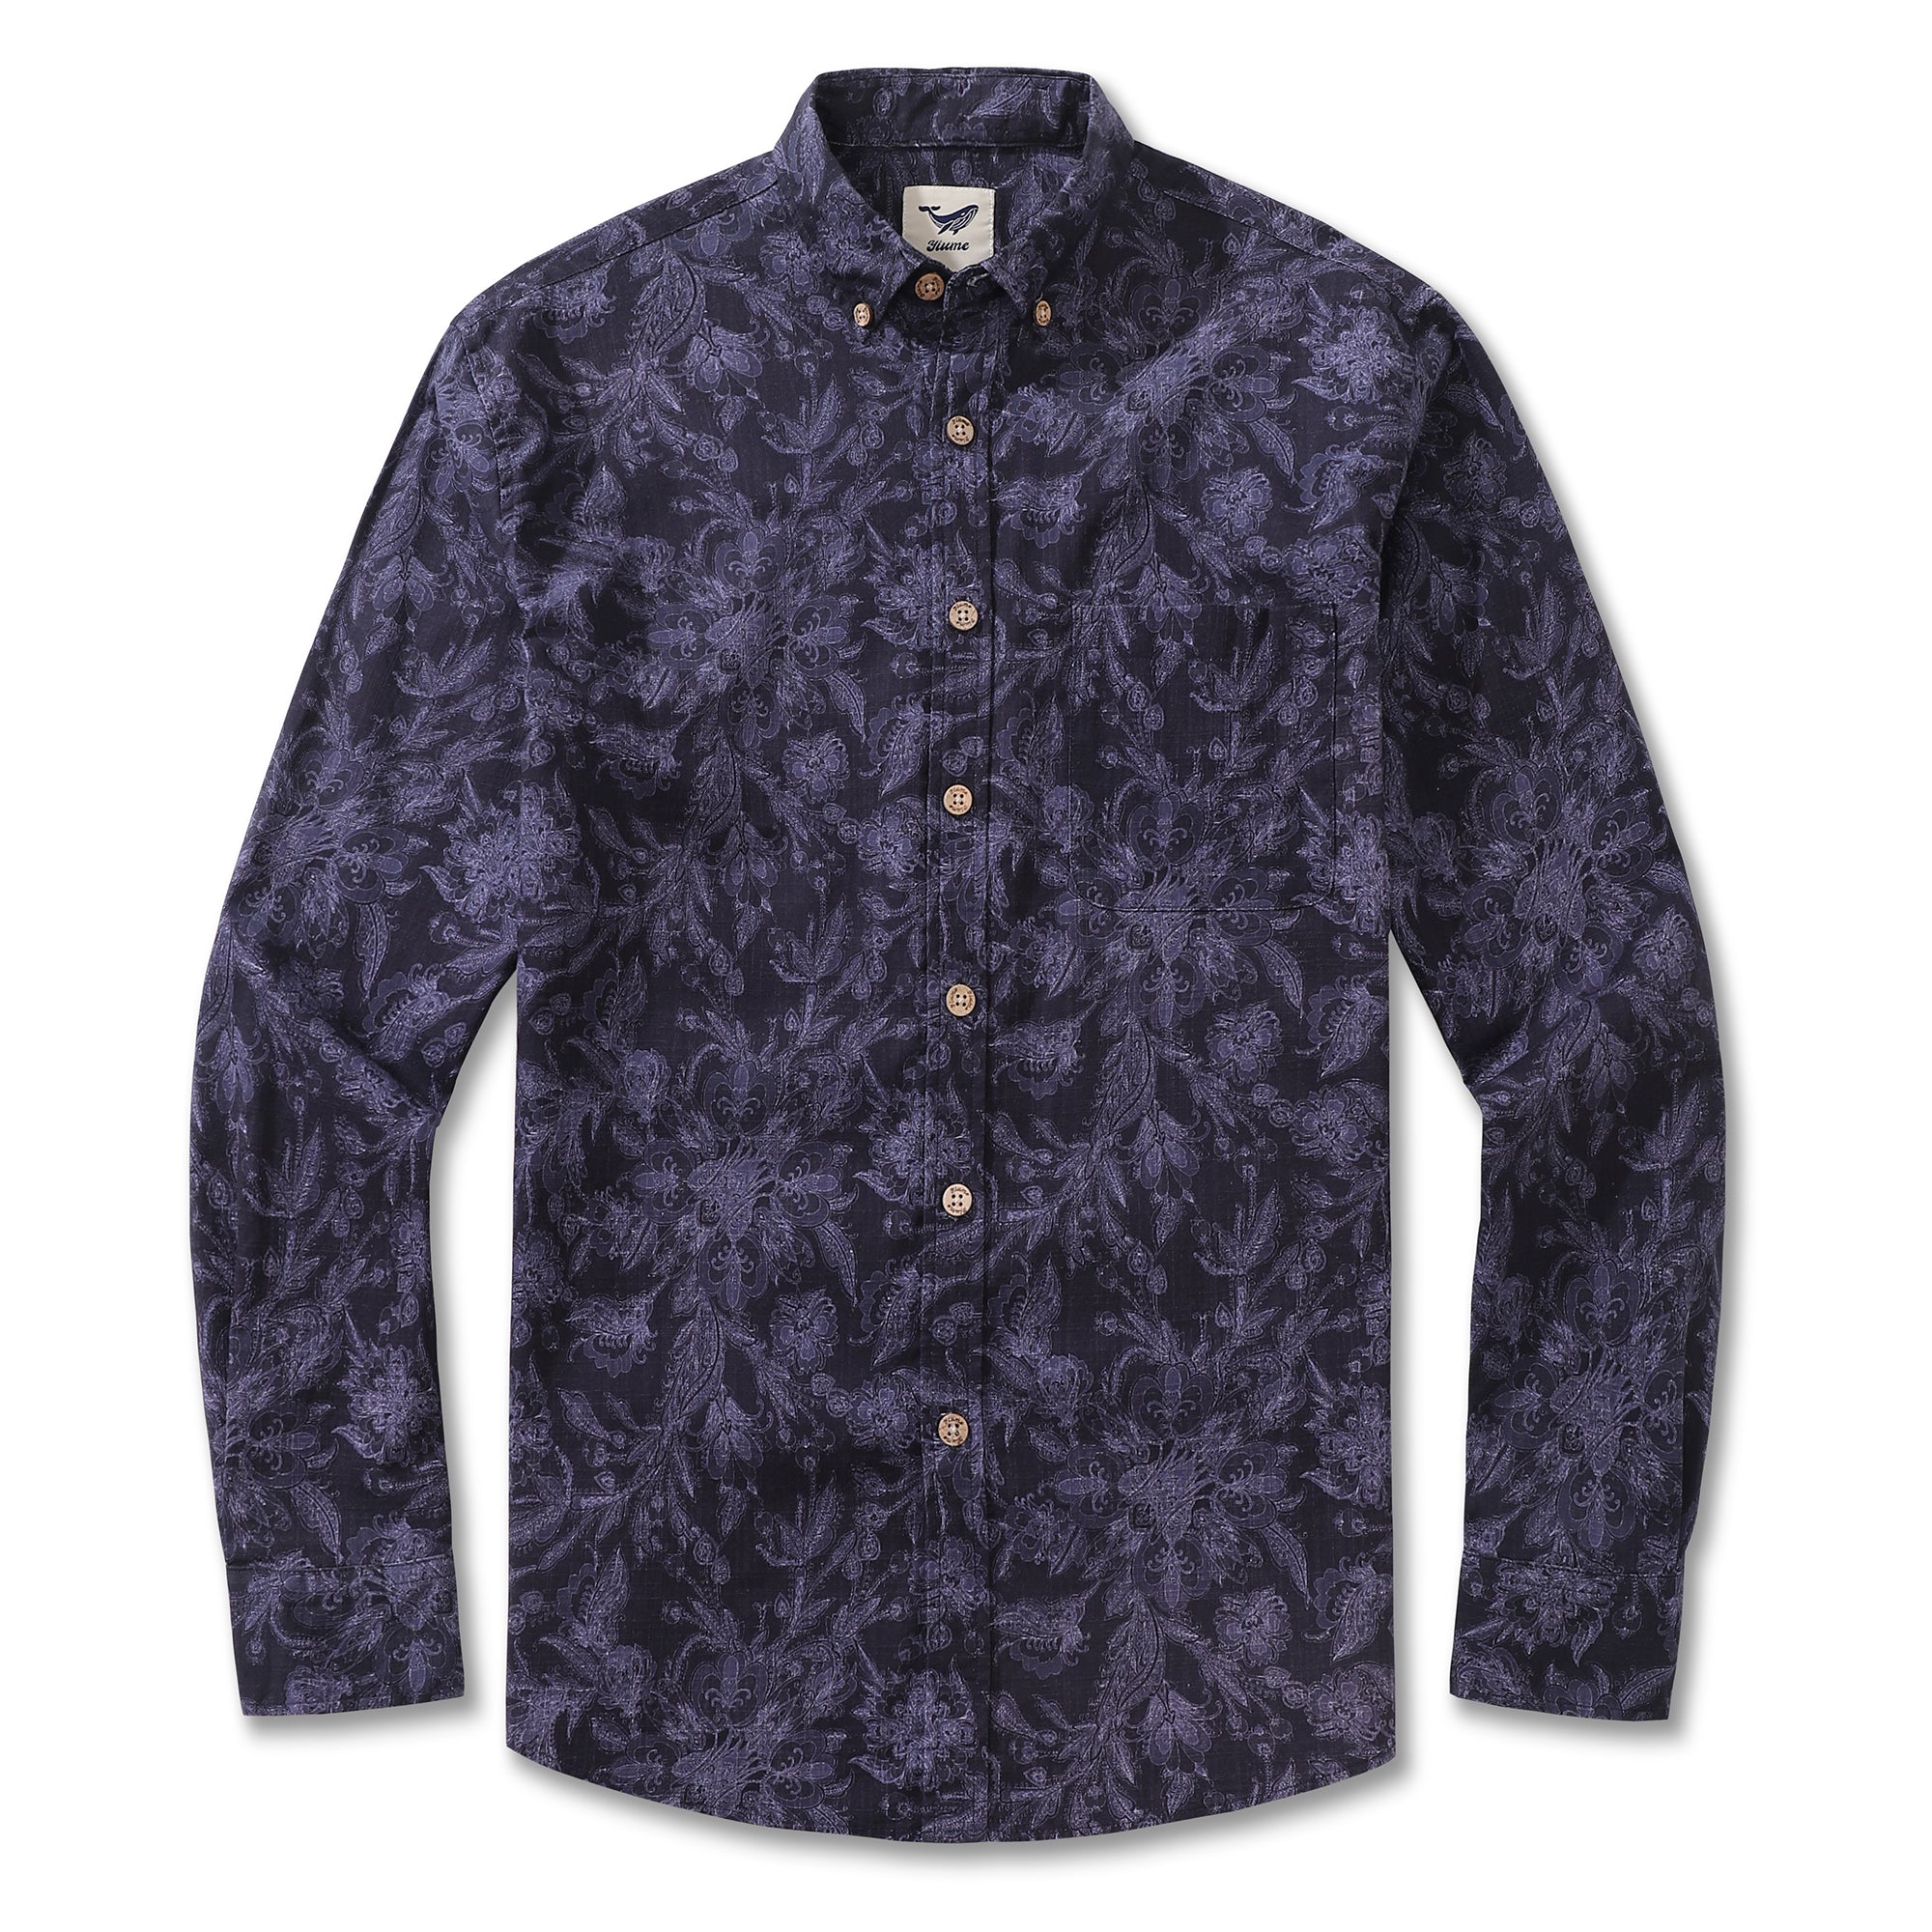 Men's Hawaiian Shirt Enchanted Elegance Cotton Button-down Long Sleeve Aloha Shirt